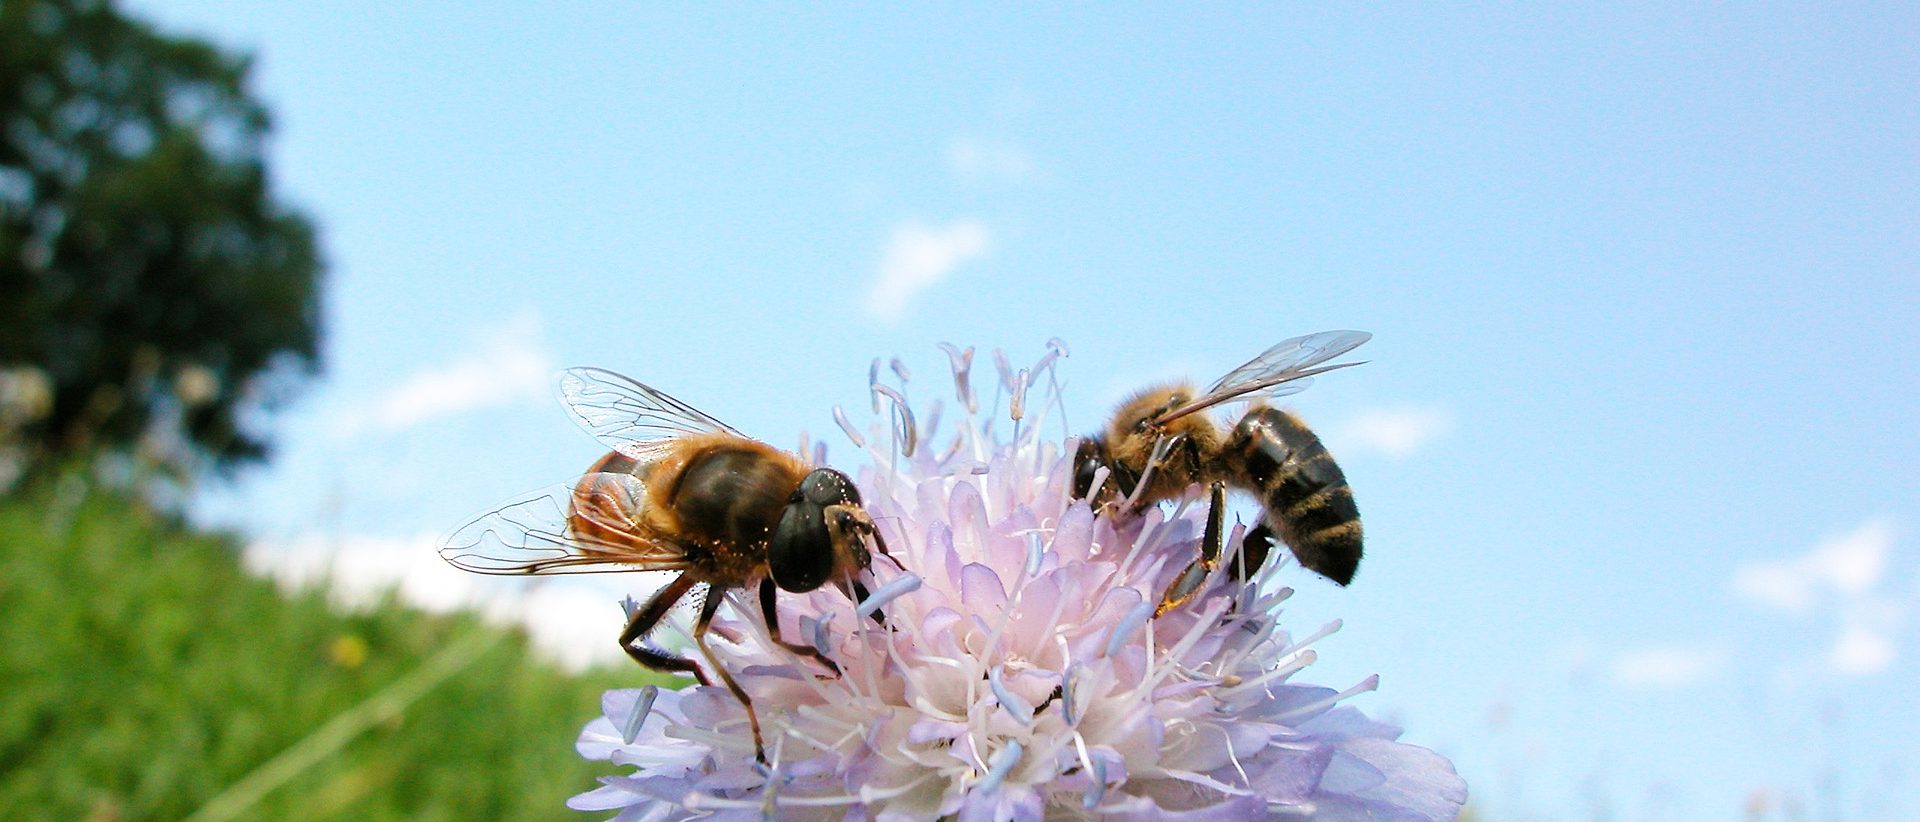 Kun ostaa kotimaista hunajaa, tukee samalla paikallista pölyttämistä ja luonnon monimuotoisuutta. Nykyään kotimaisten tuottajien hunajaa voi tilata myös verkosta suoraan kotiovelle.